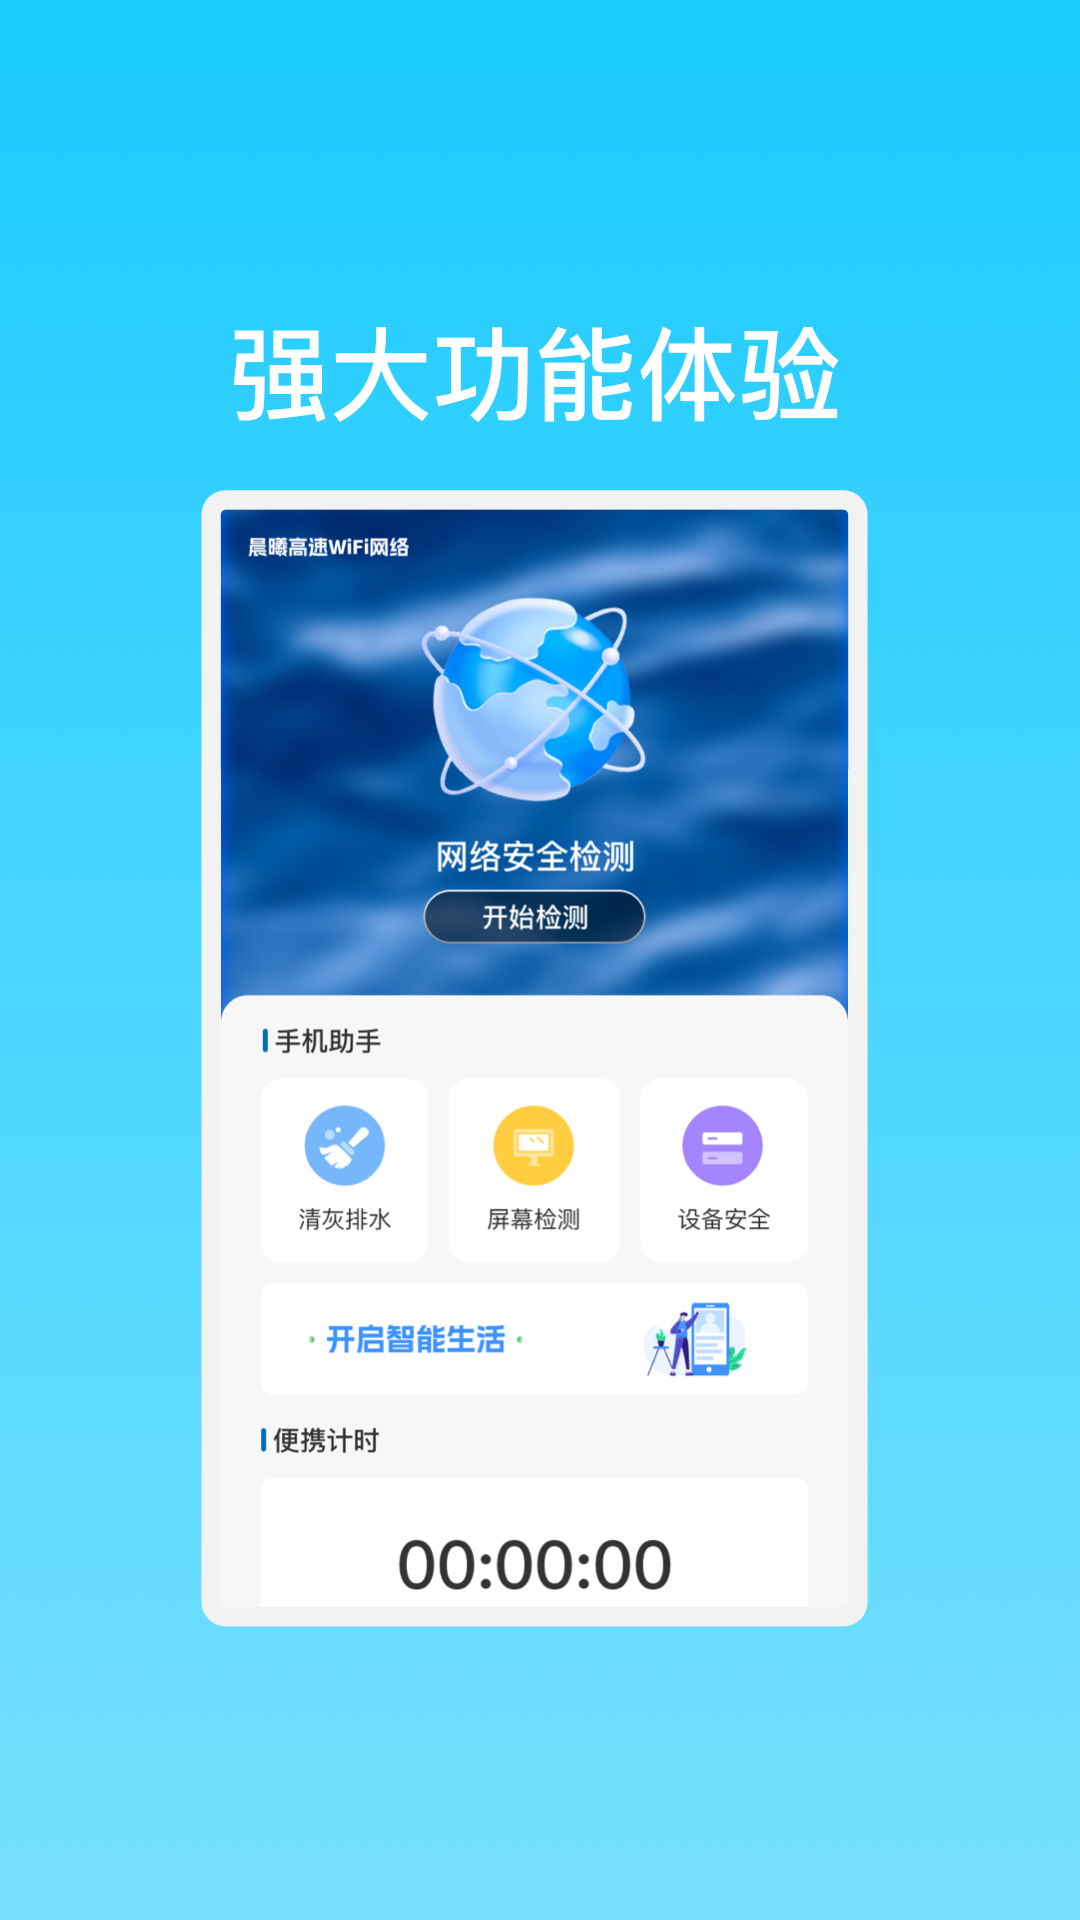 晨曦高速WiFi网络app官方版图片1